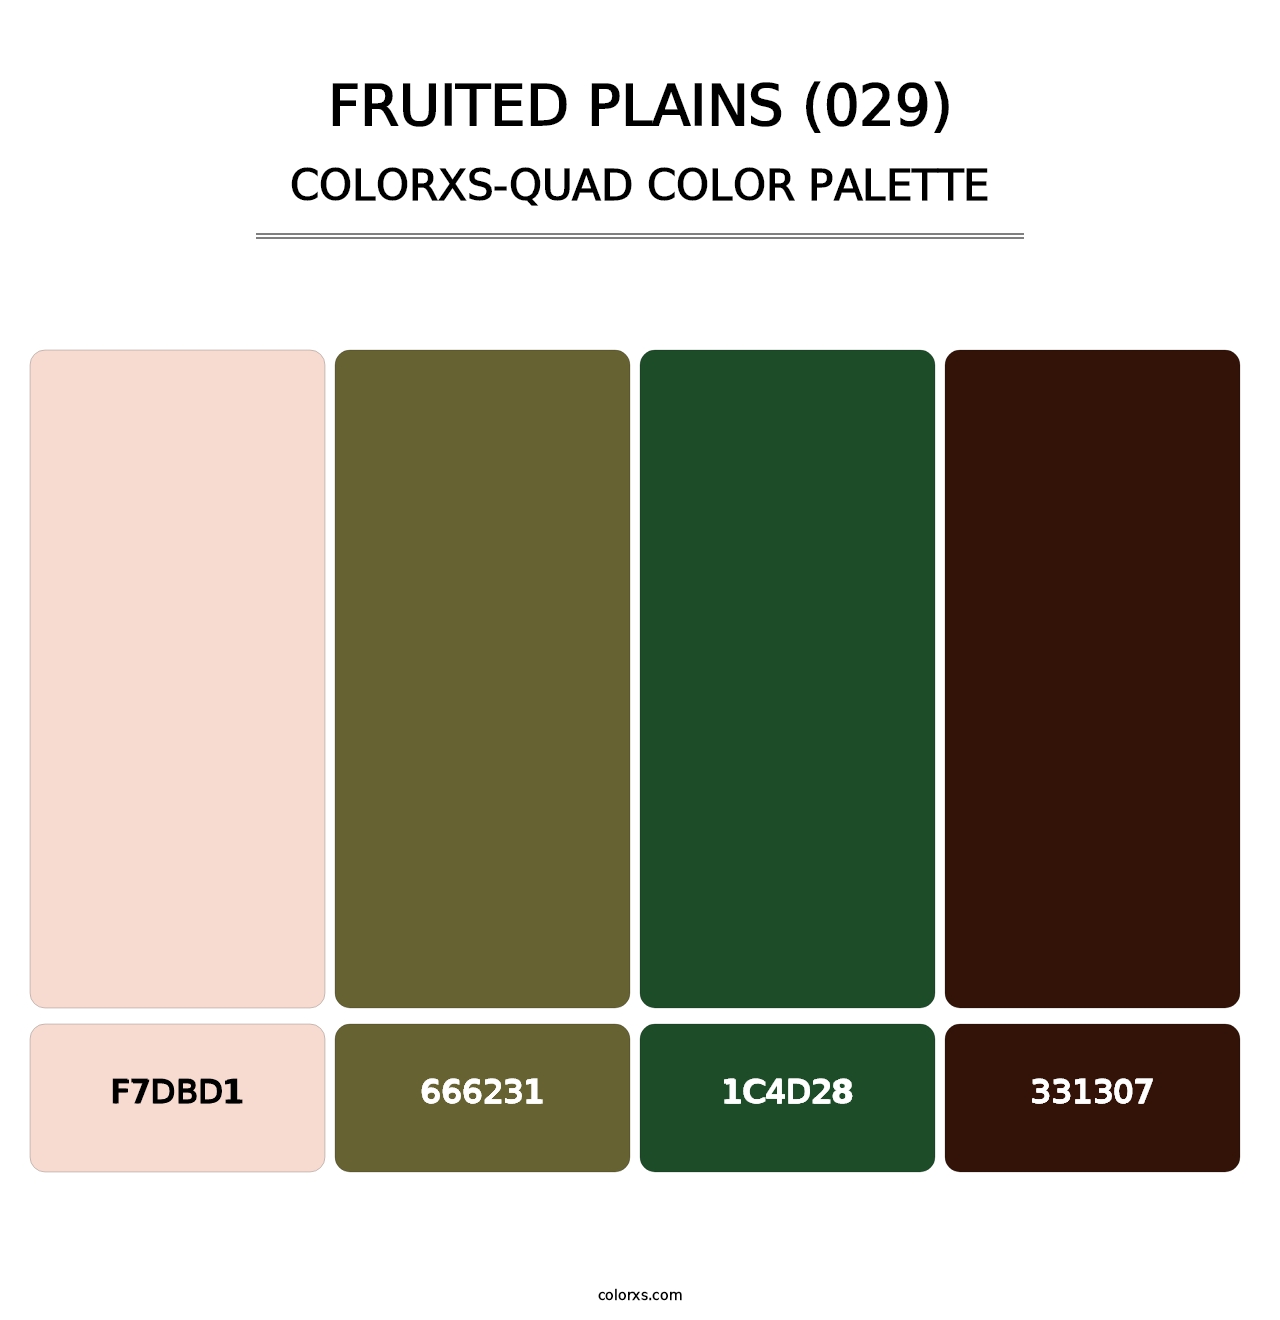 Fruited Plains (029) - Colorxs Quad Palette